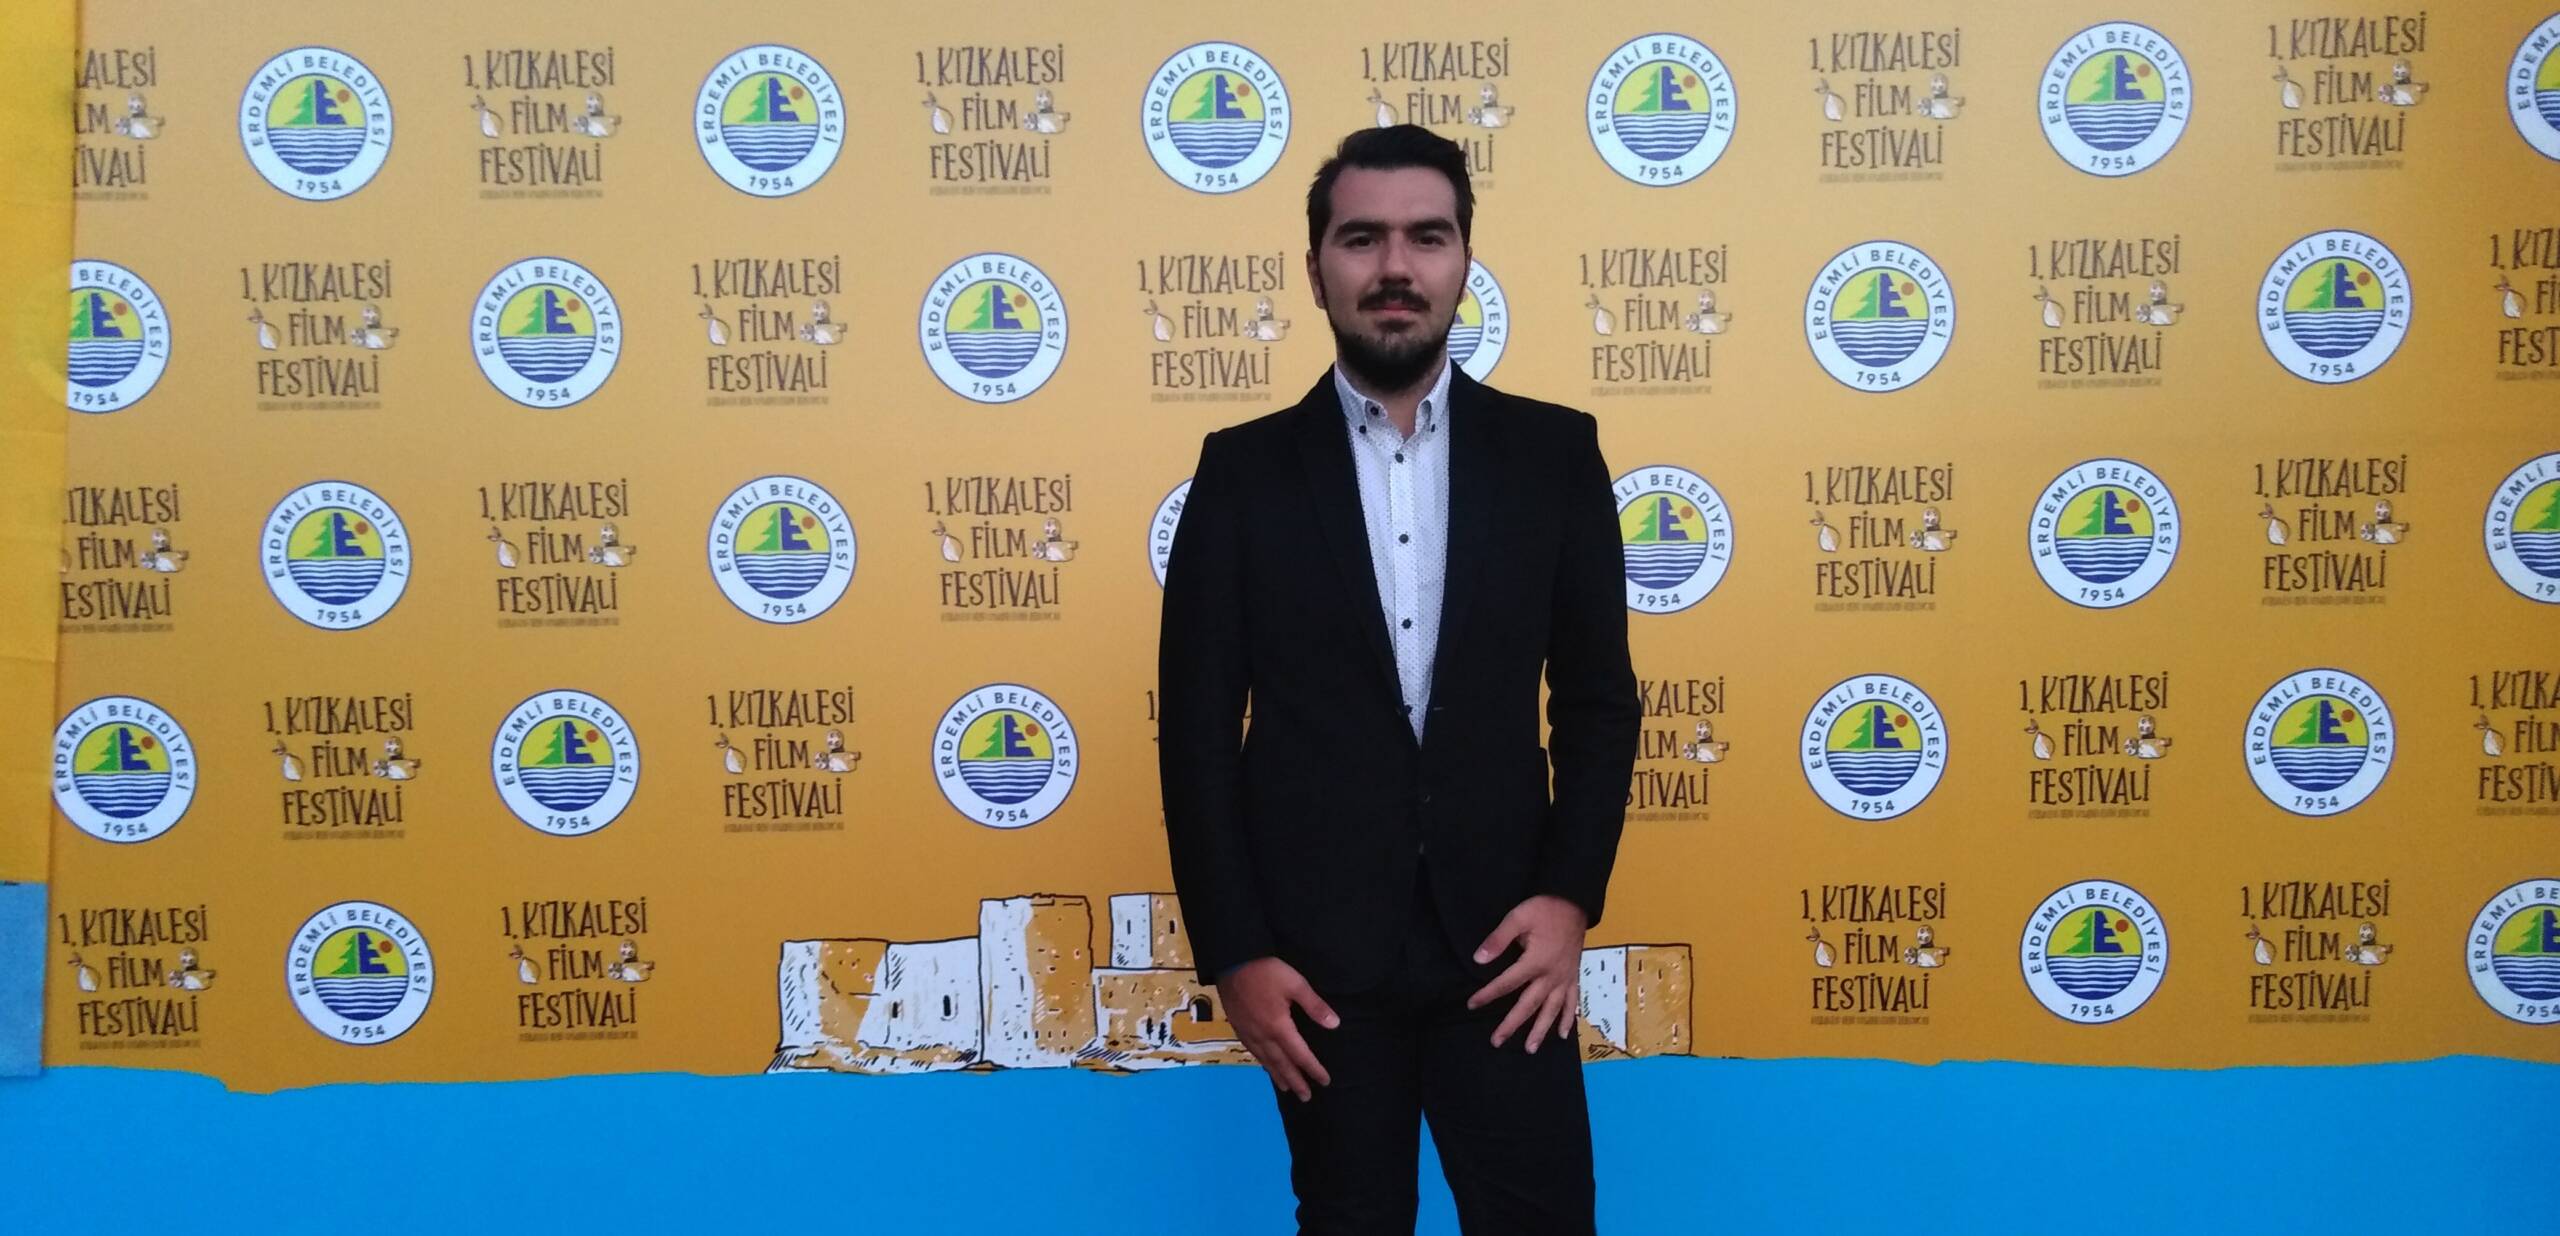 Tarihi Kızkalesi’nin sinemayla ilk buluşması: “1. Kızkalesi Film Festivali”